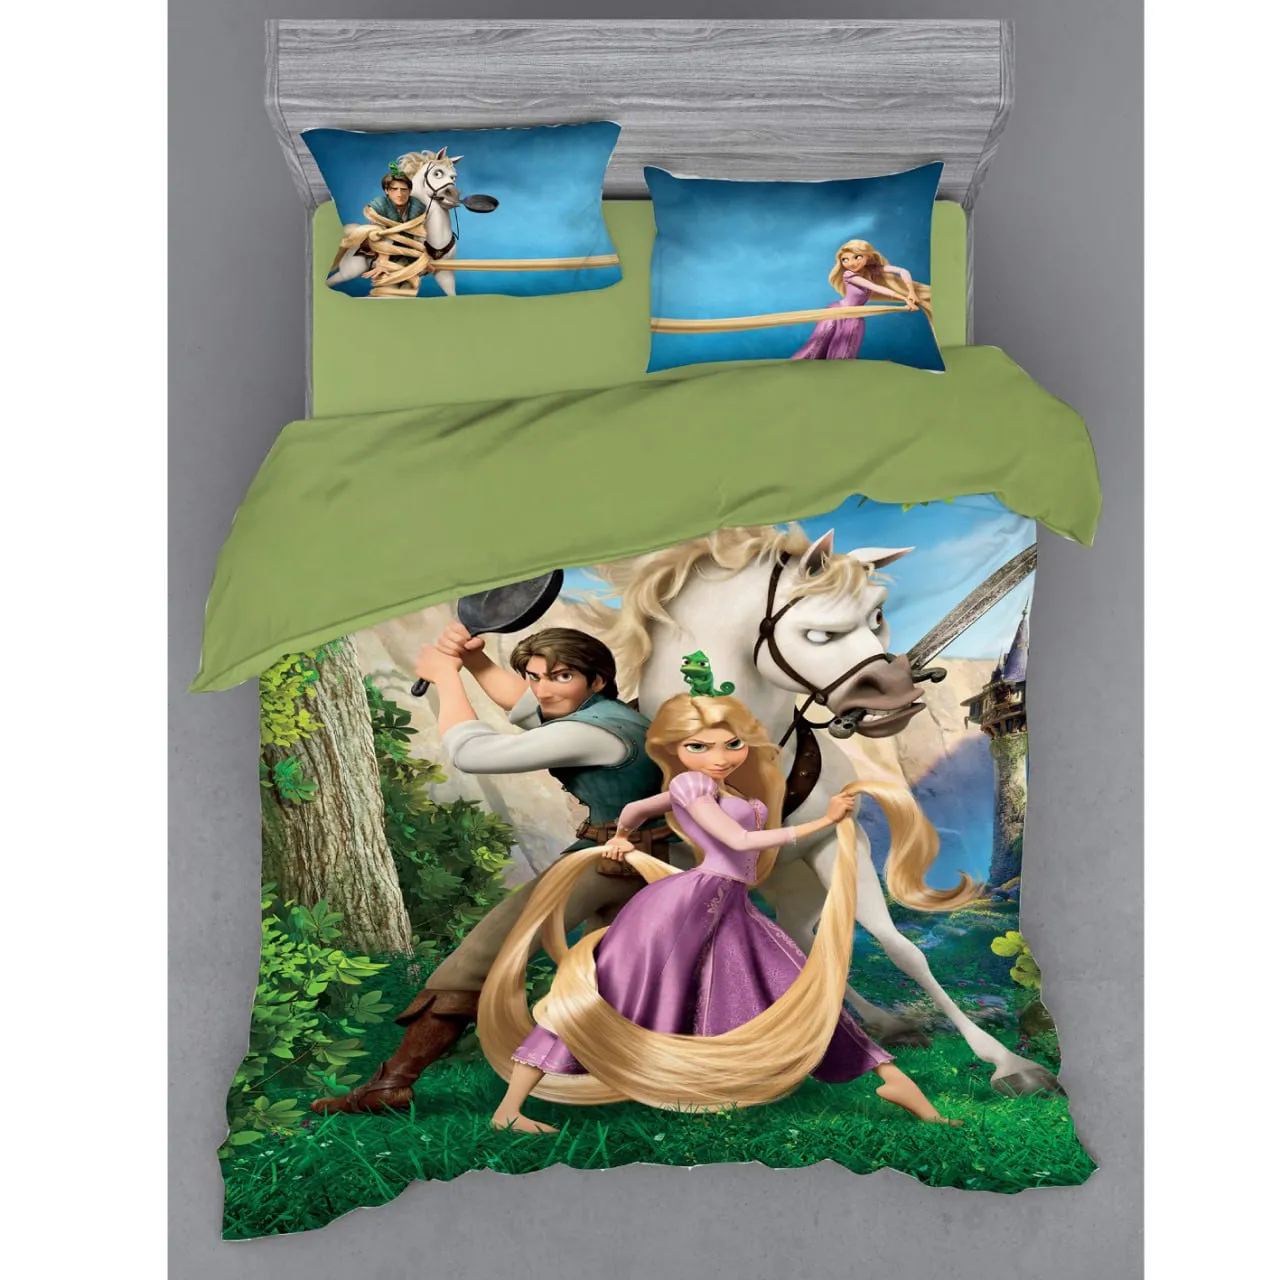 Комплект детского постельного белья LELIT. Принцесса Рапунцел#1